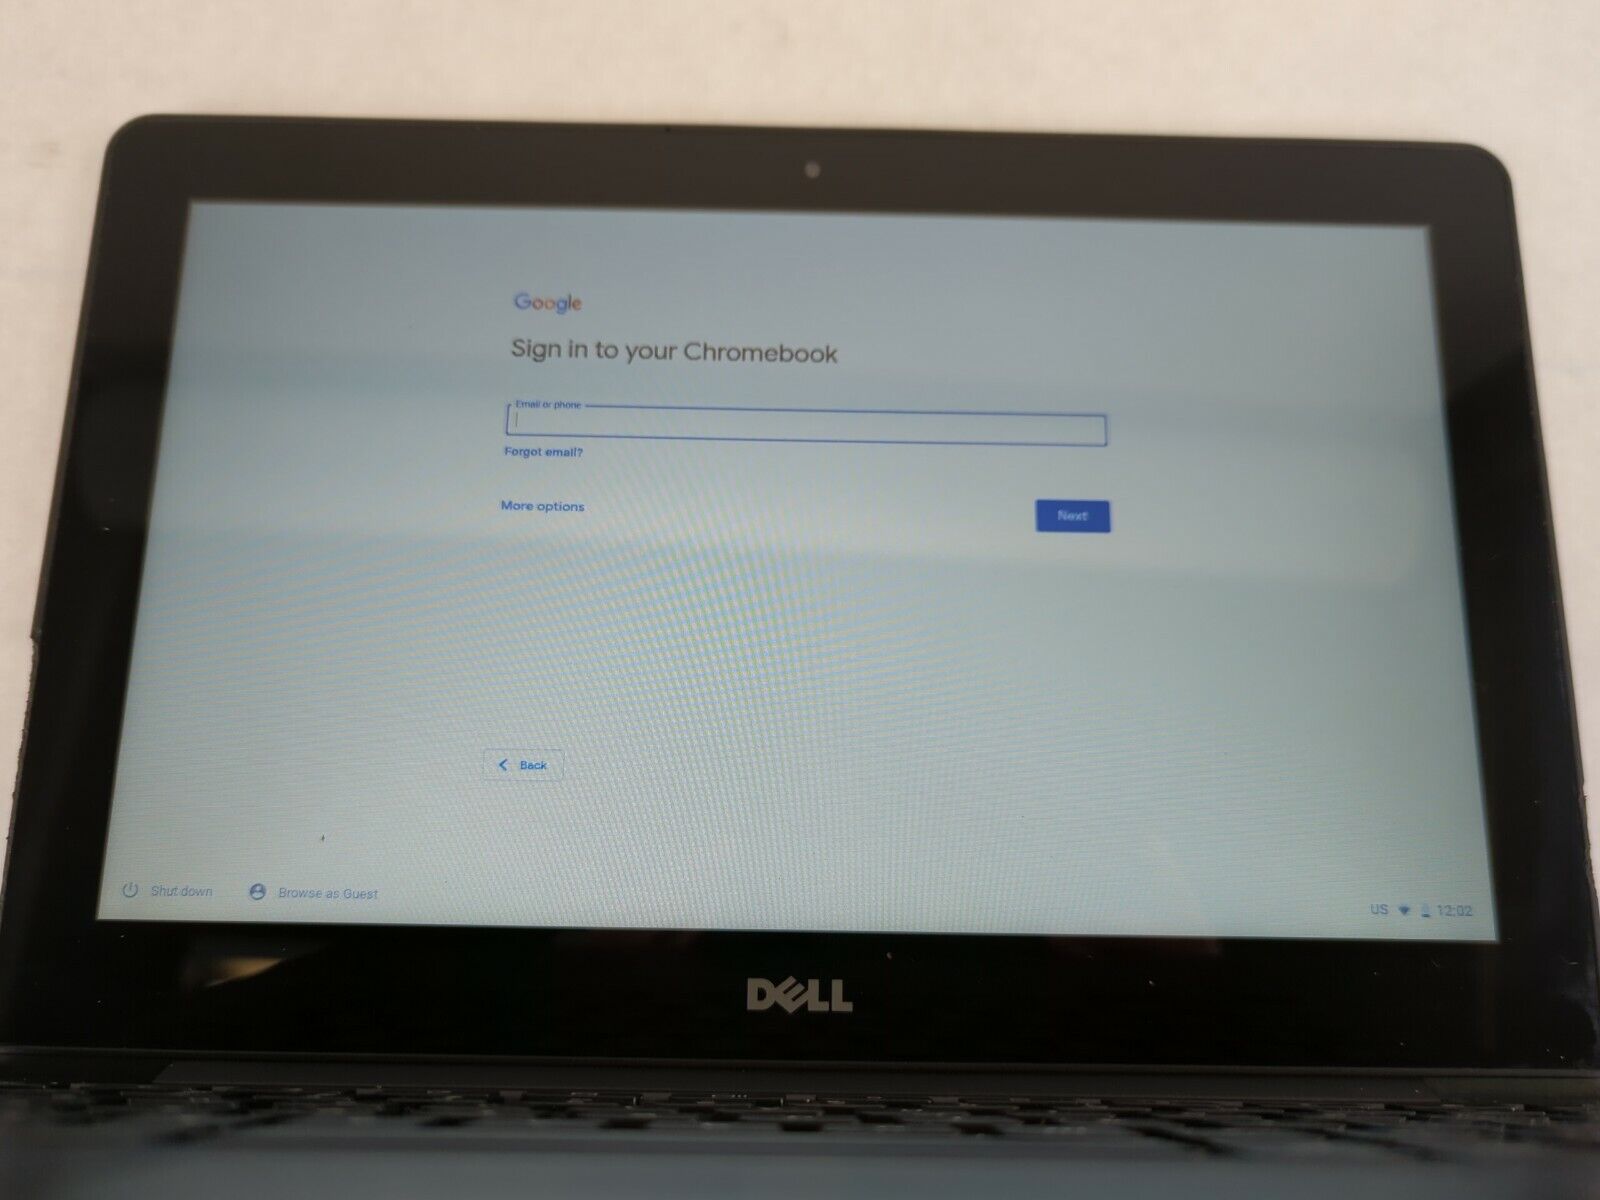 Dell Chromebook 11 CB1C13 11.6" Intel Celeron 2955U 1.4GHz 2GB RAM 16GB SSD